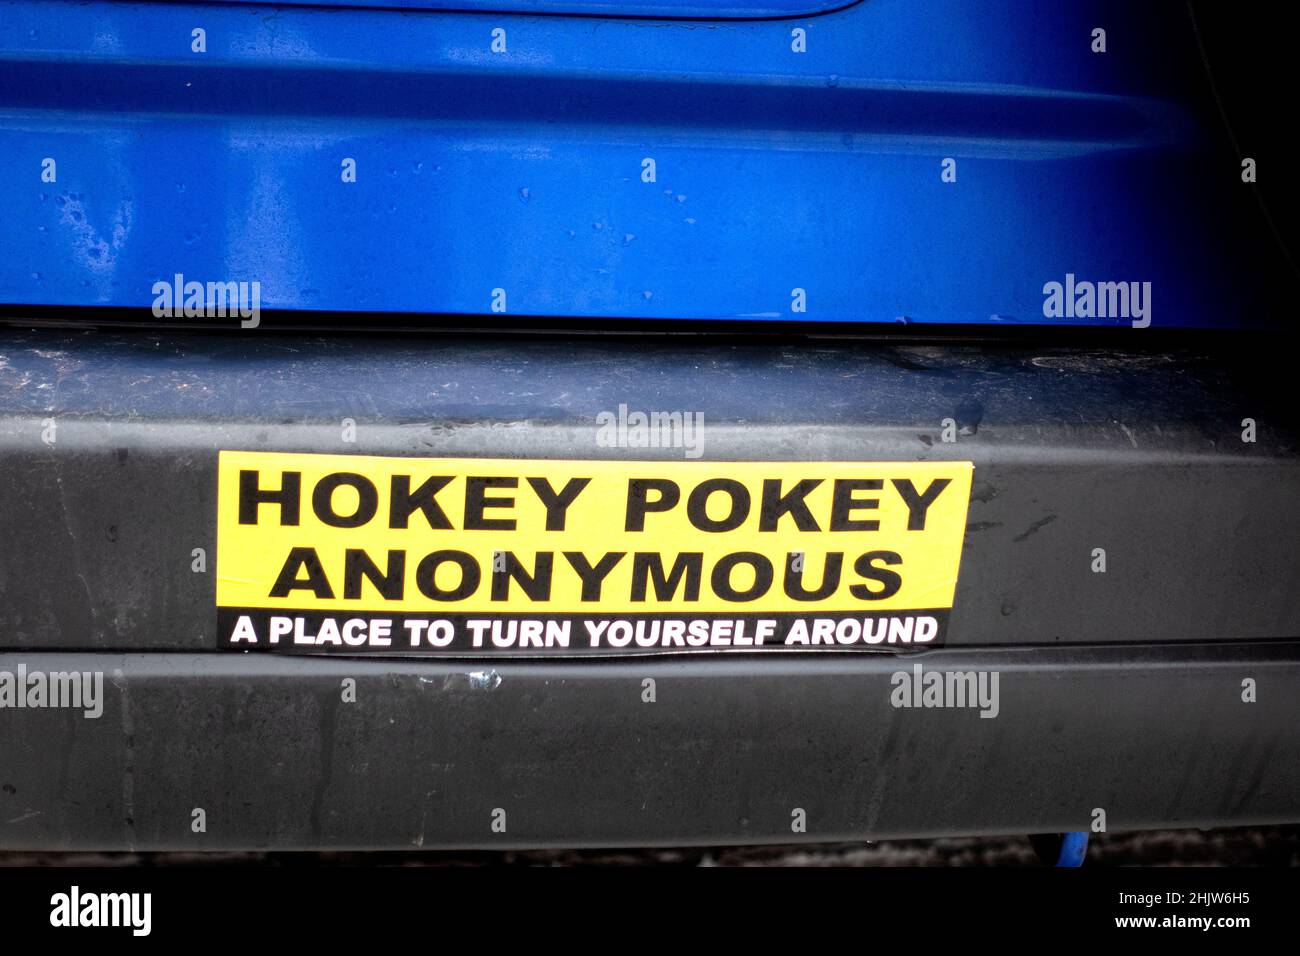 Adesivo paraurti che dice 'Hokey Pokey Anonymous' 'Un posto per girarsi intorno' un luogo d'incontro per Alcoholics Anonymous. St Paul Minnesota, Stati Uniti Foto Stock